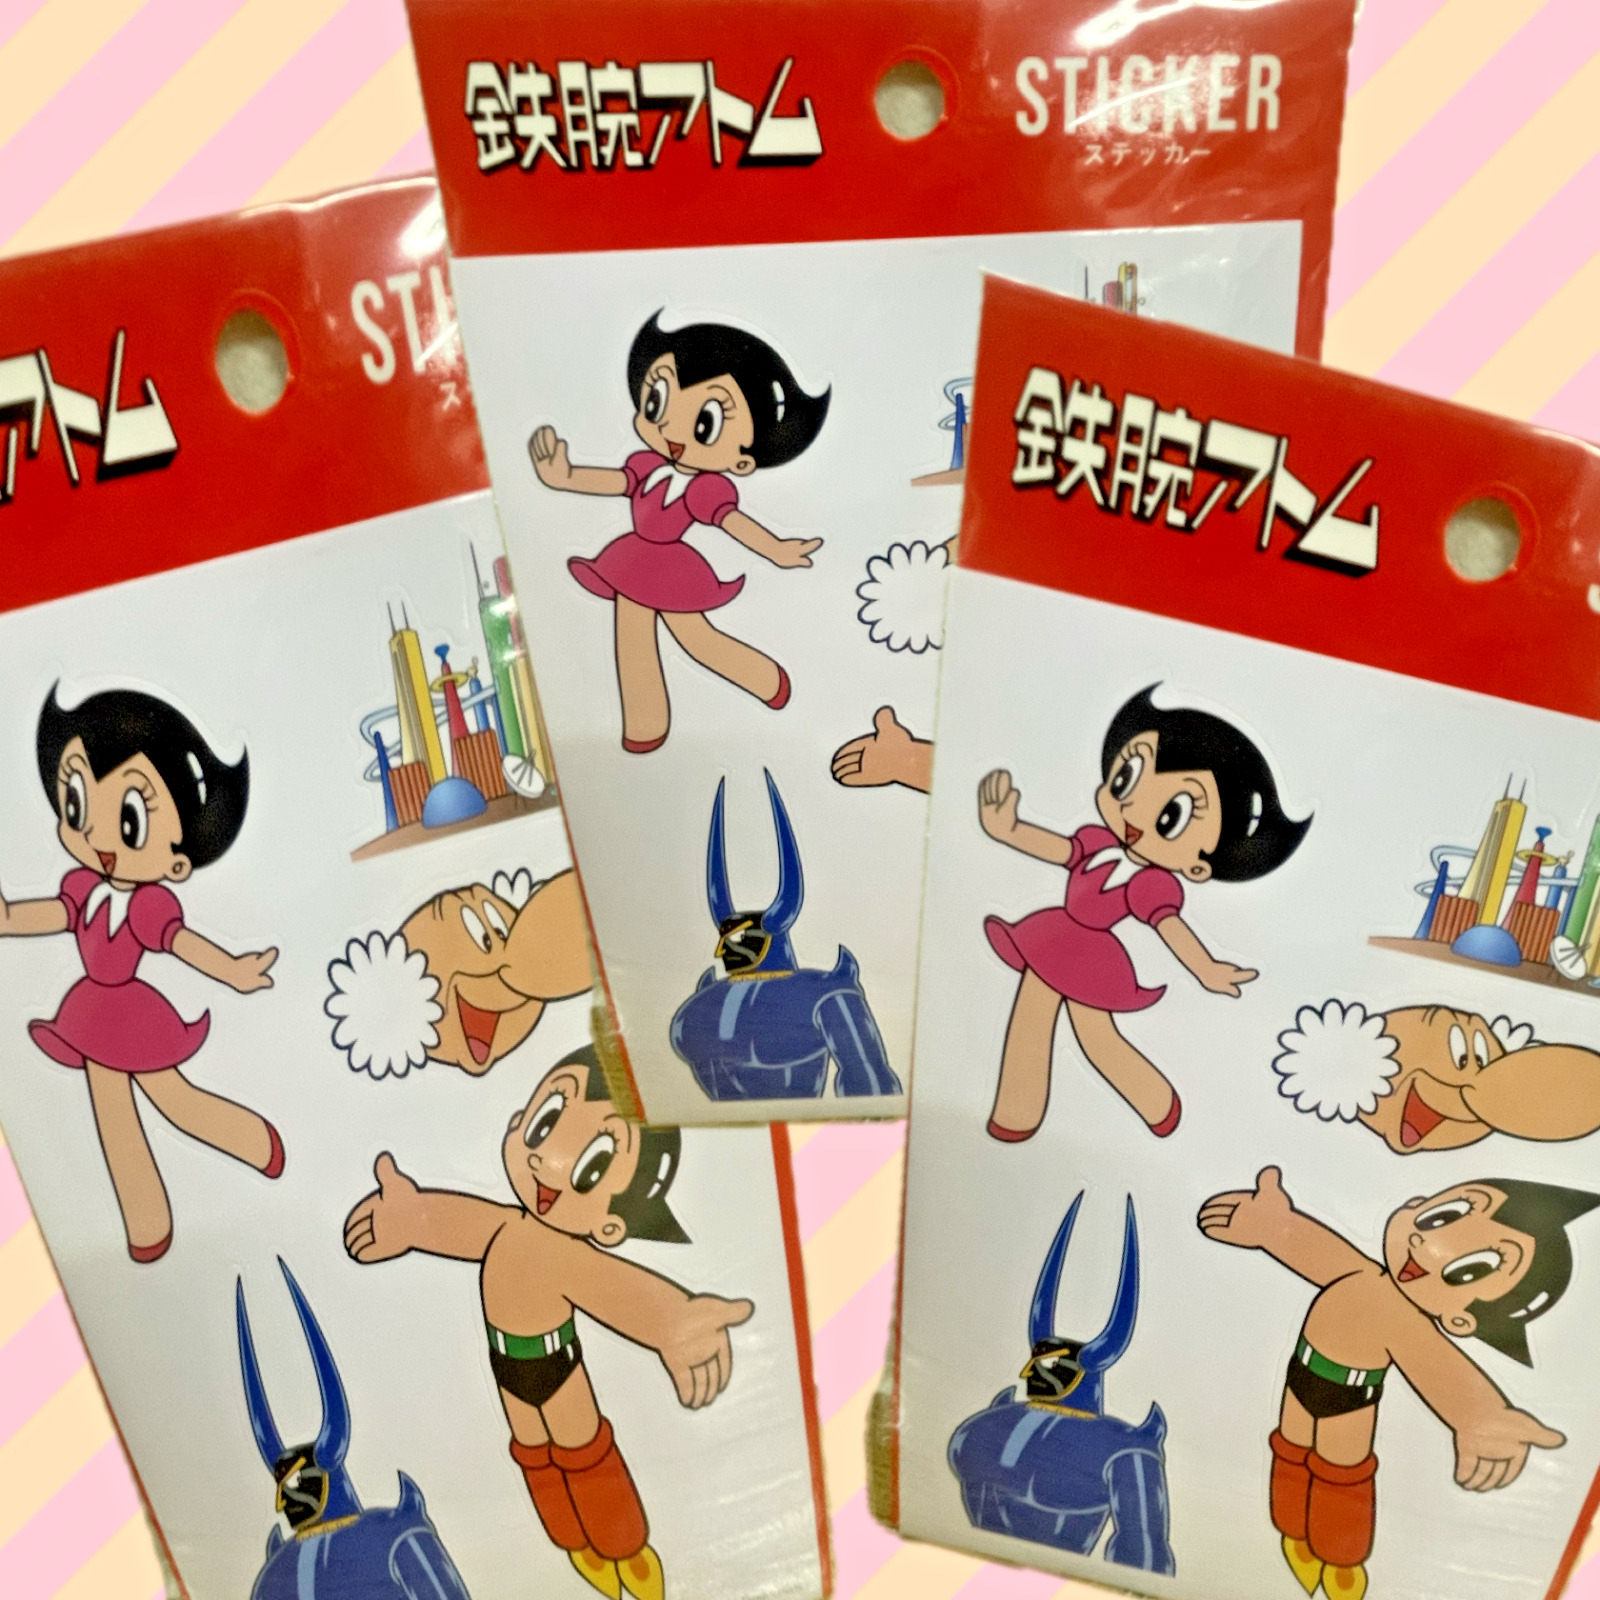 Astro Boy Sticker 3 set Shin & Co. Japan Osamu Tezuka Tetsuwan Atom Astroboy